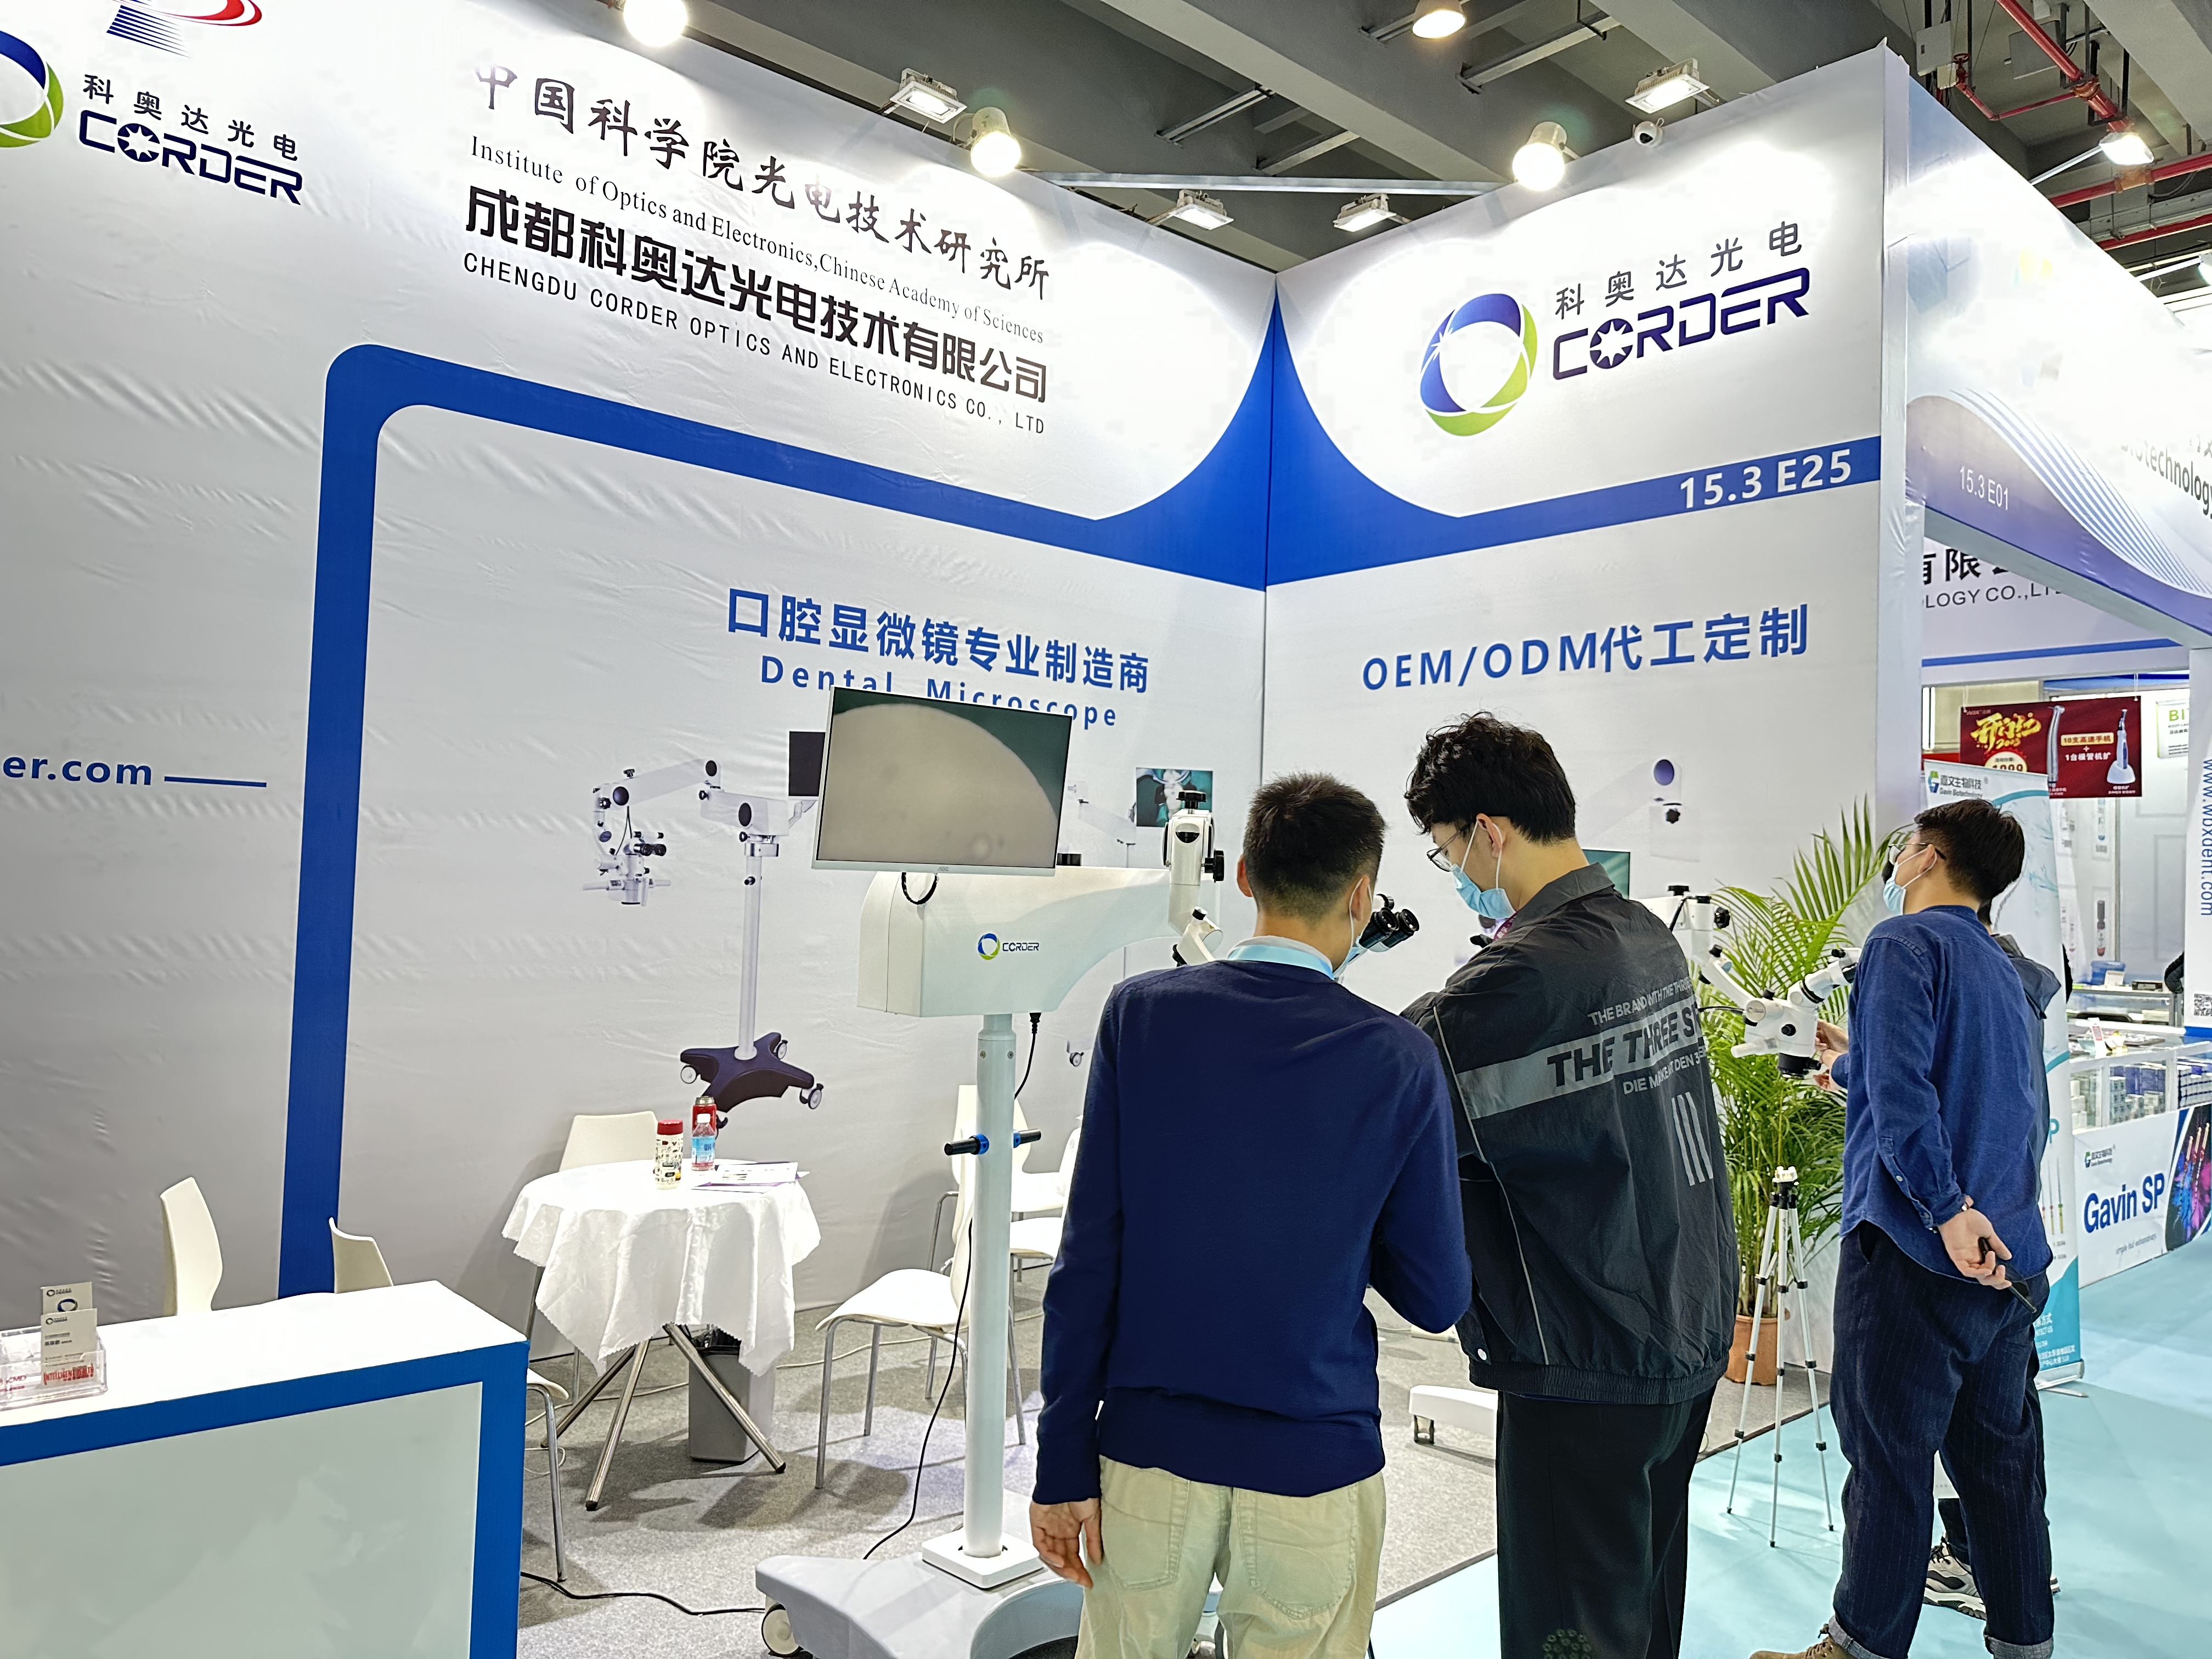 23.-26. februar 2023, Guangzhou South China Dental Exhibition